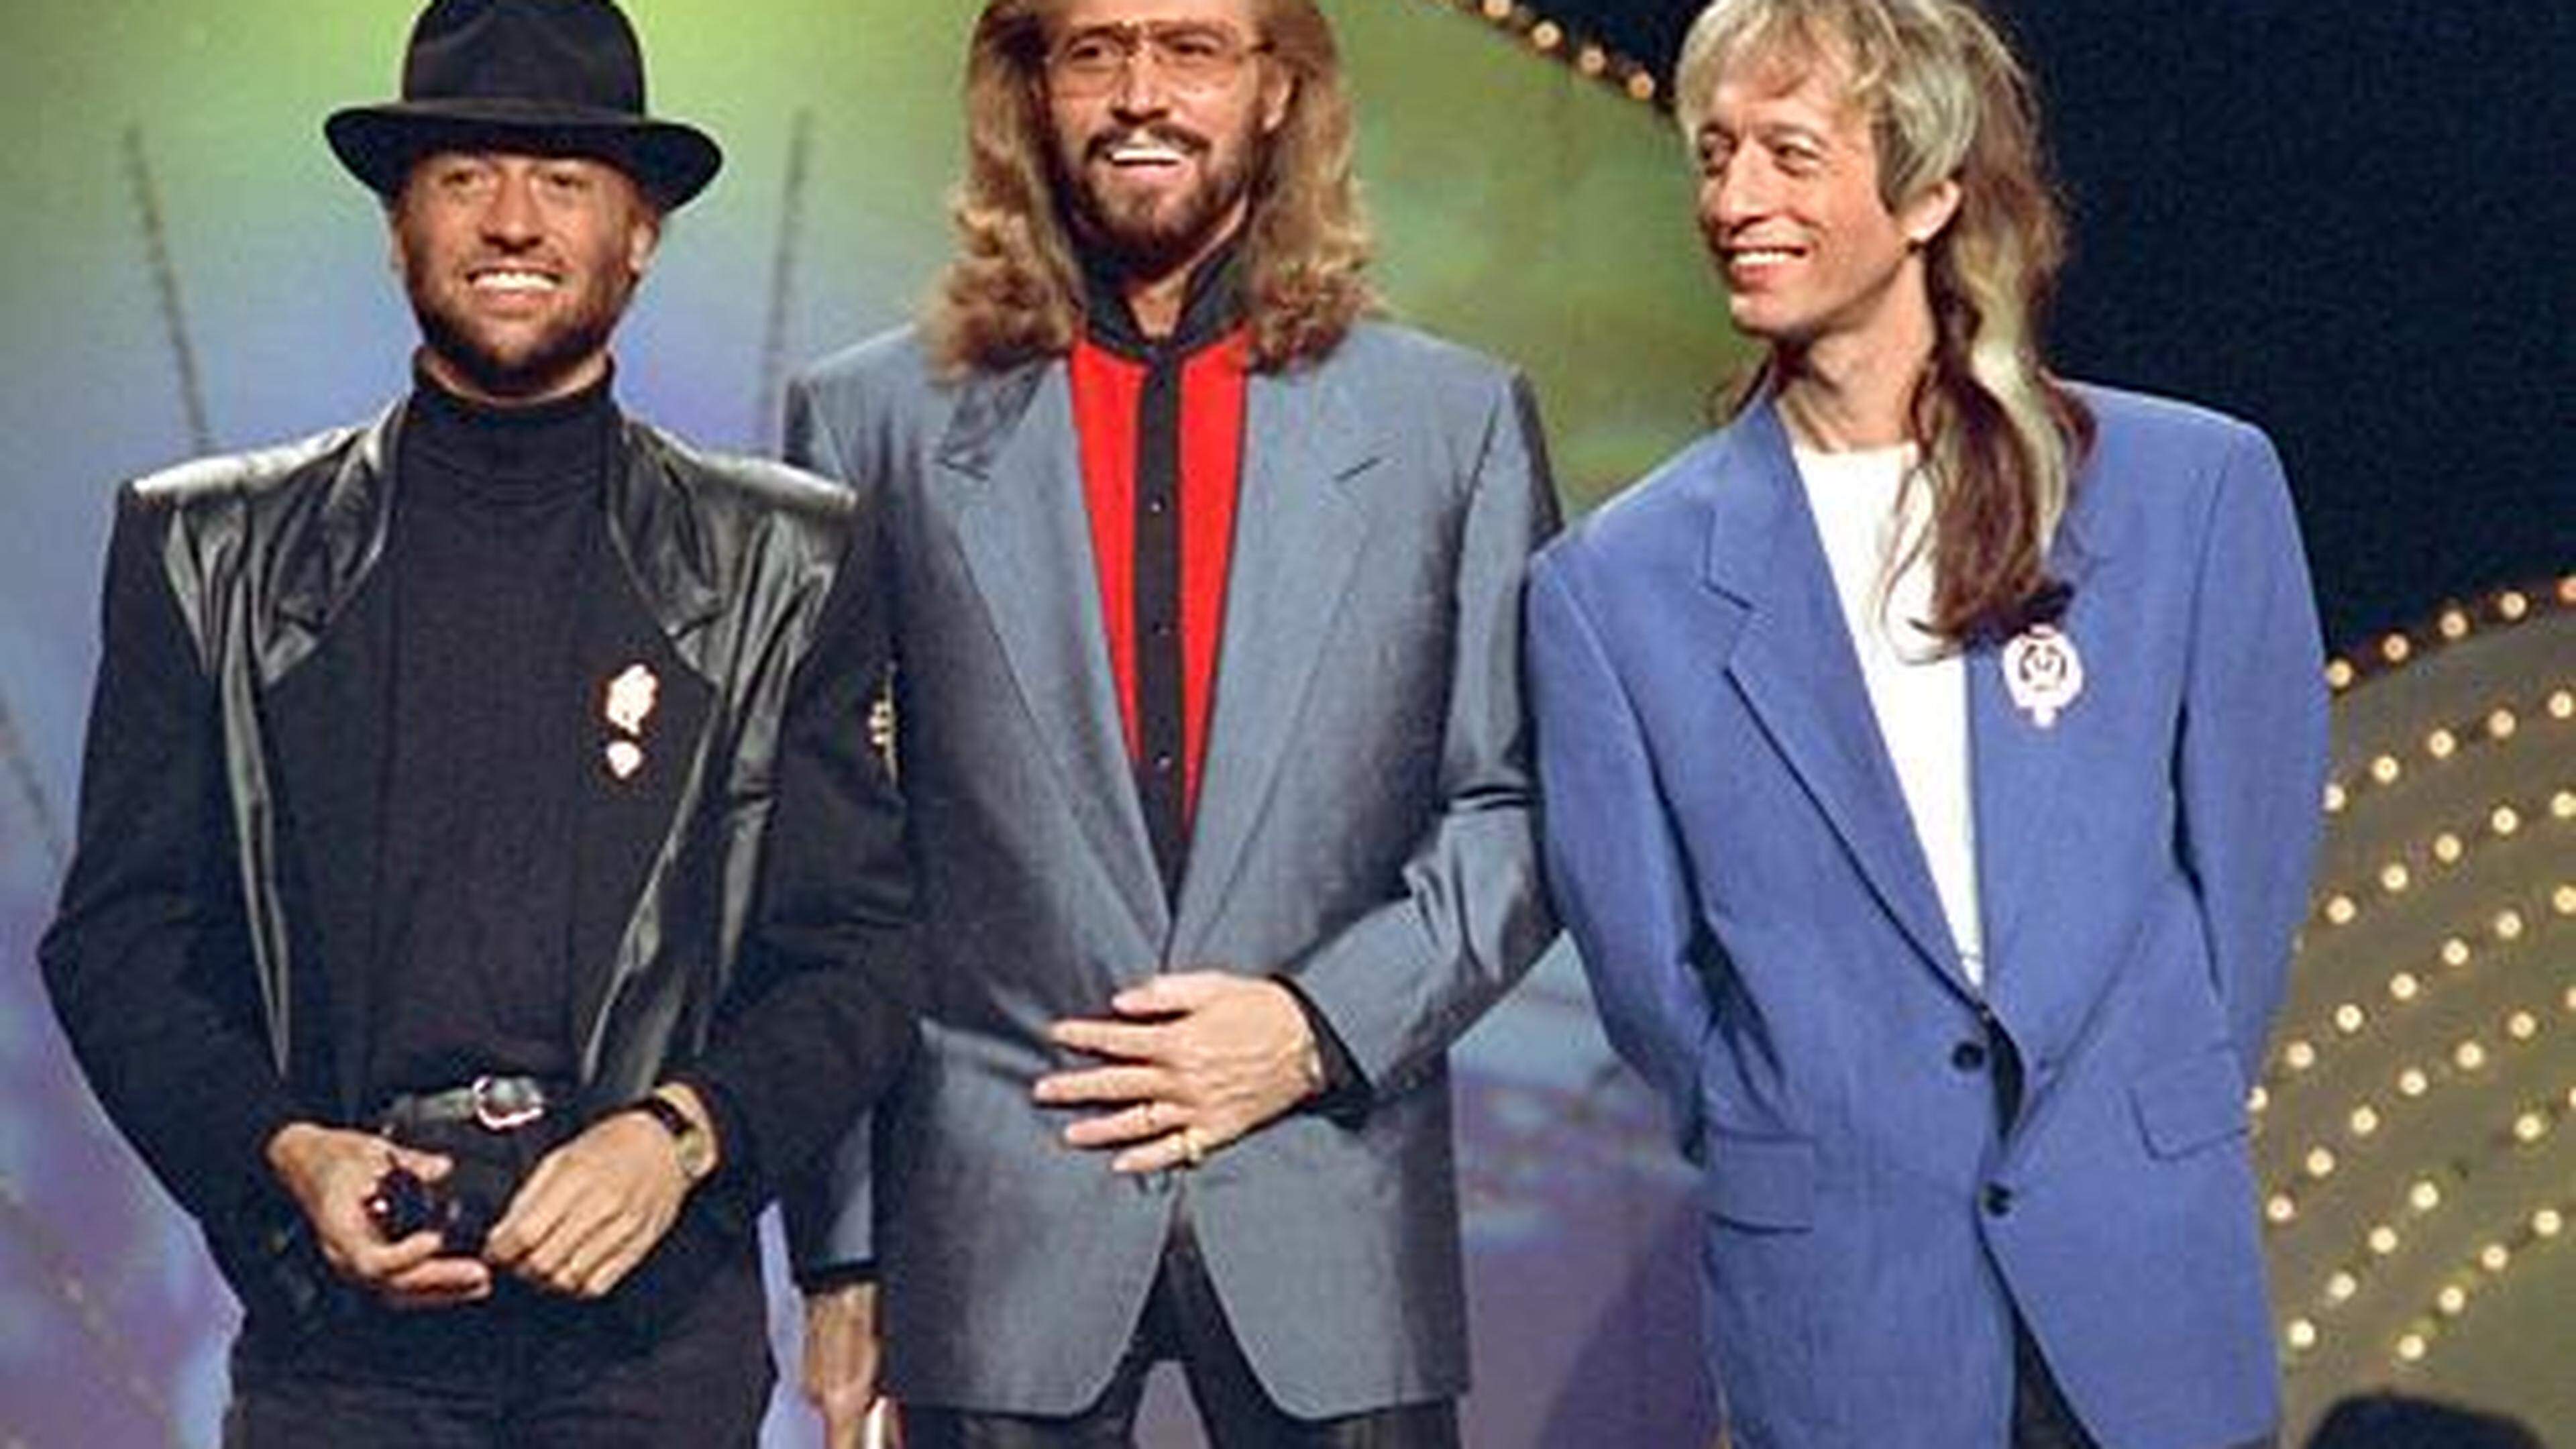 Die Popgruppe Bee Gees, bestehend aus den Brüdern Maurice, Barry und Robin Gibb (von links) bei einem Auftritt im Jahr 1991.